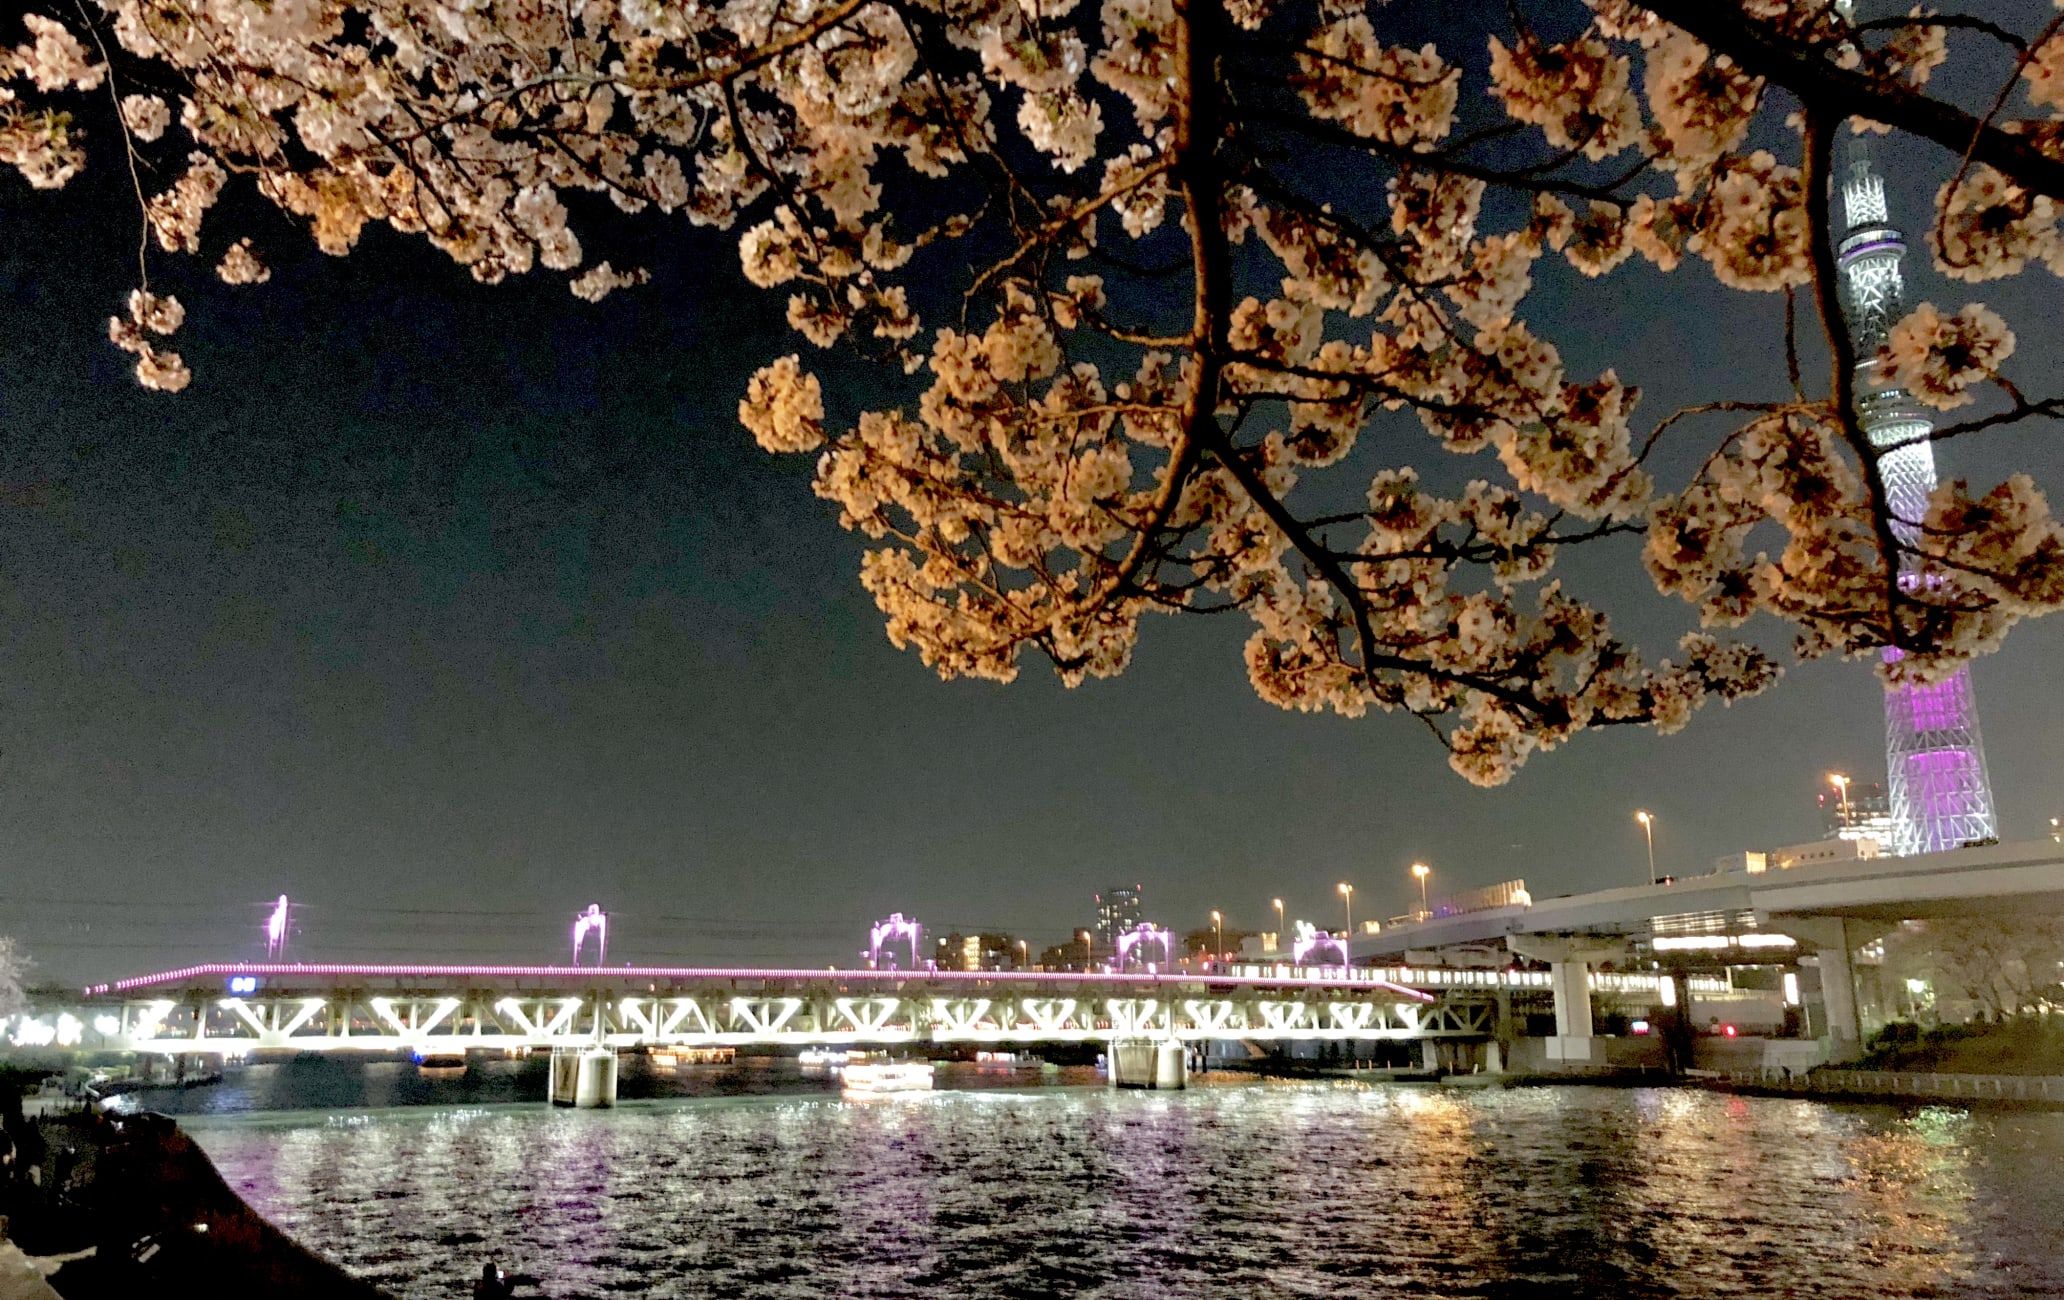 Sumida Park Cherry Blossom Festival